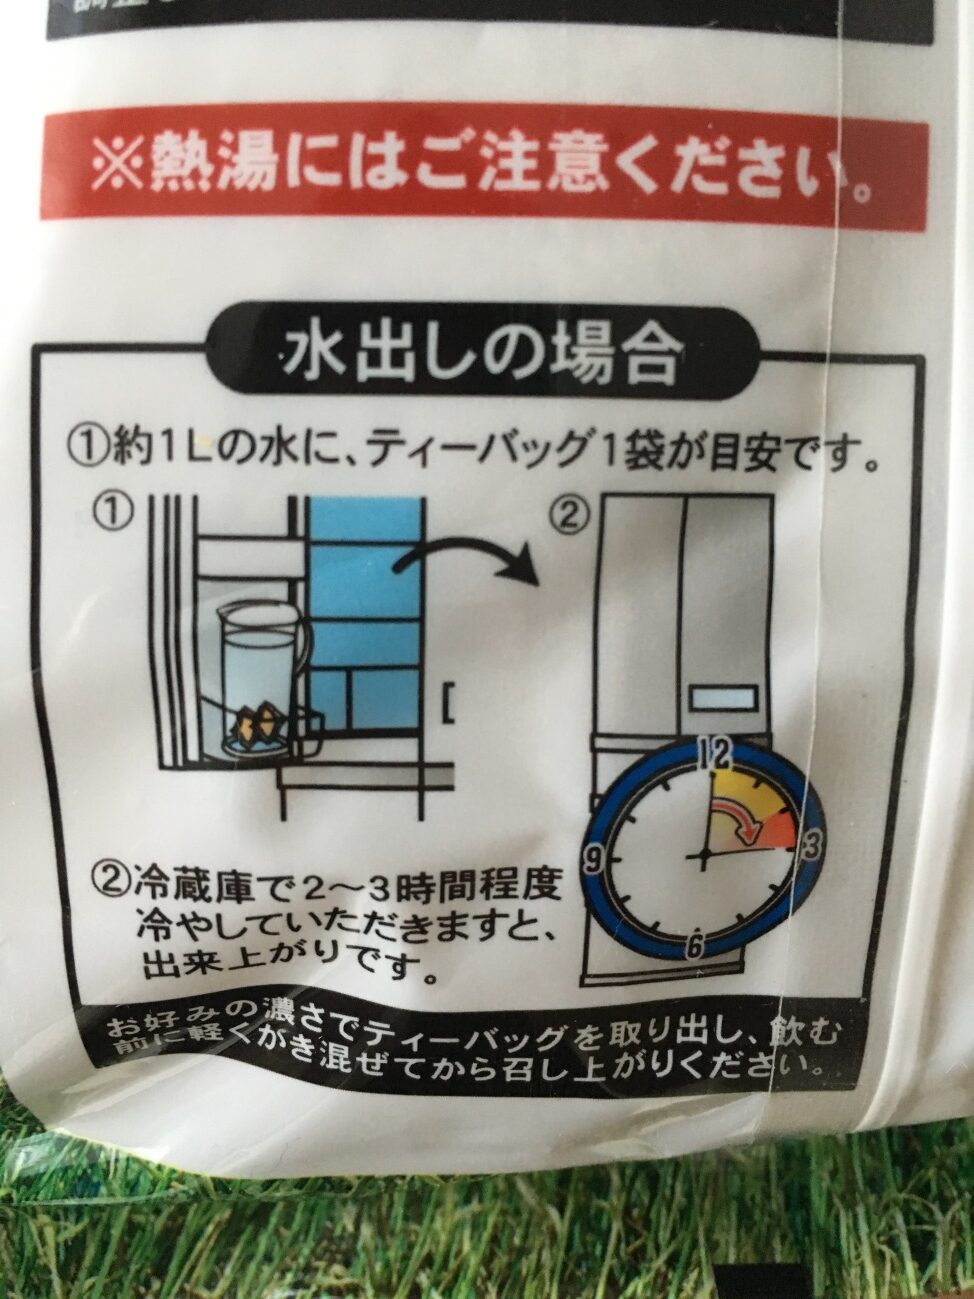 業務スーパーの麦茶のパッケージに記載されている水出し方法